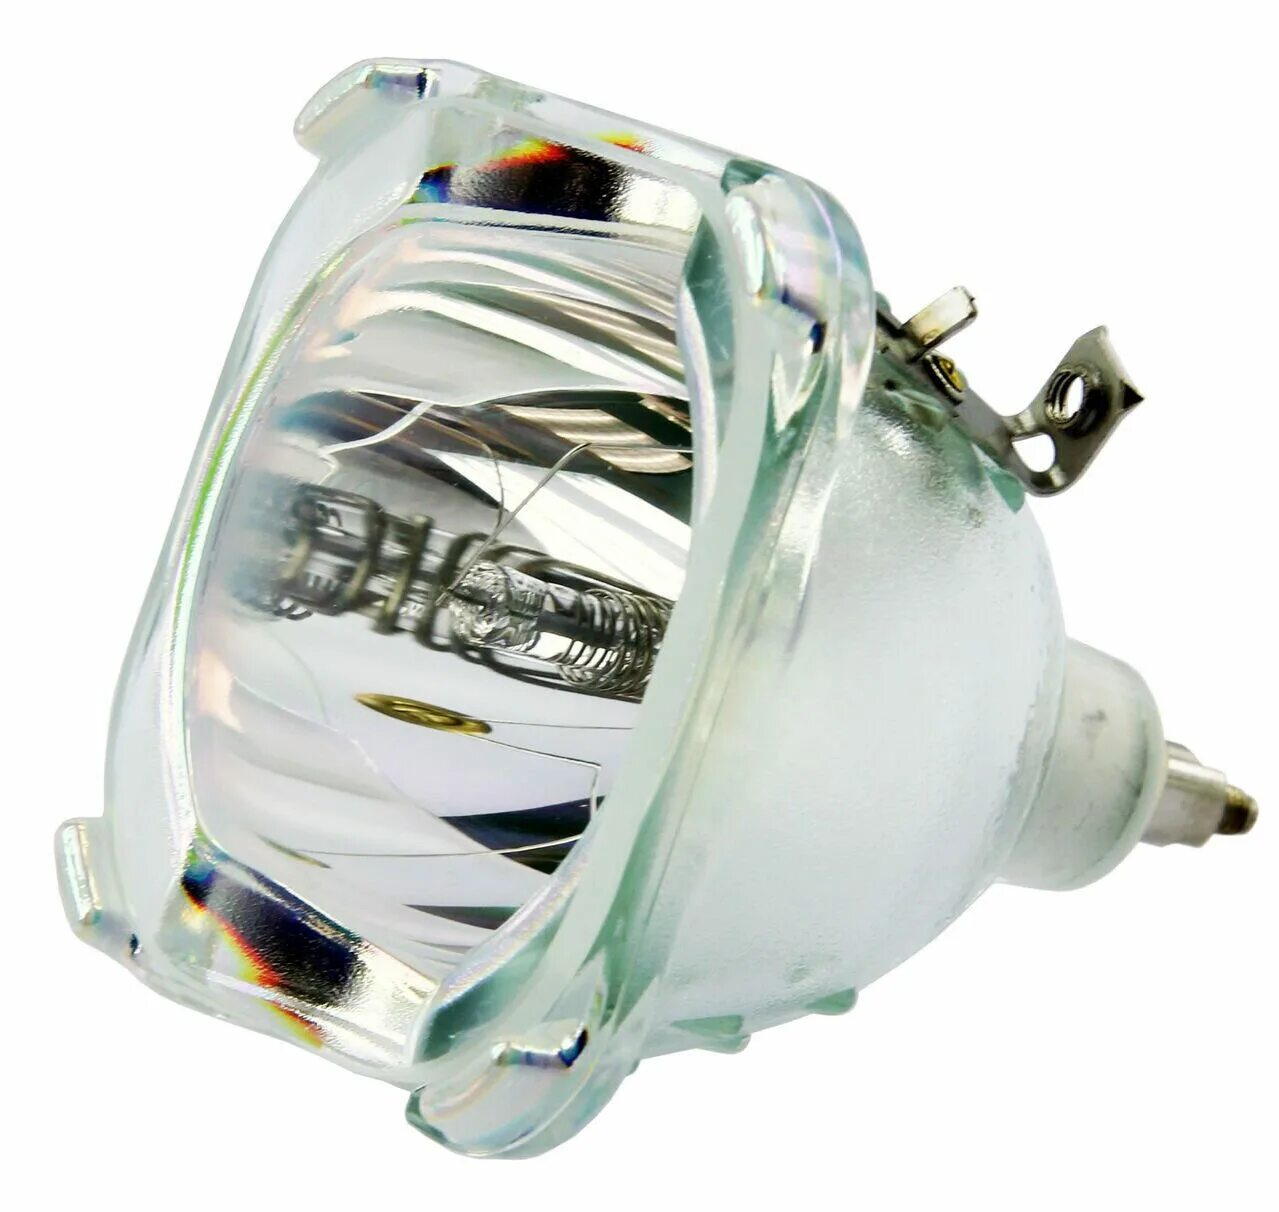 Купить лампу для телевизора. P-VIP 150-180/1.0 E20.6. Osram p-VIP Original. Лампа для проекционного телевизора Thomson 52rh44e. P VIP лампа.